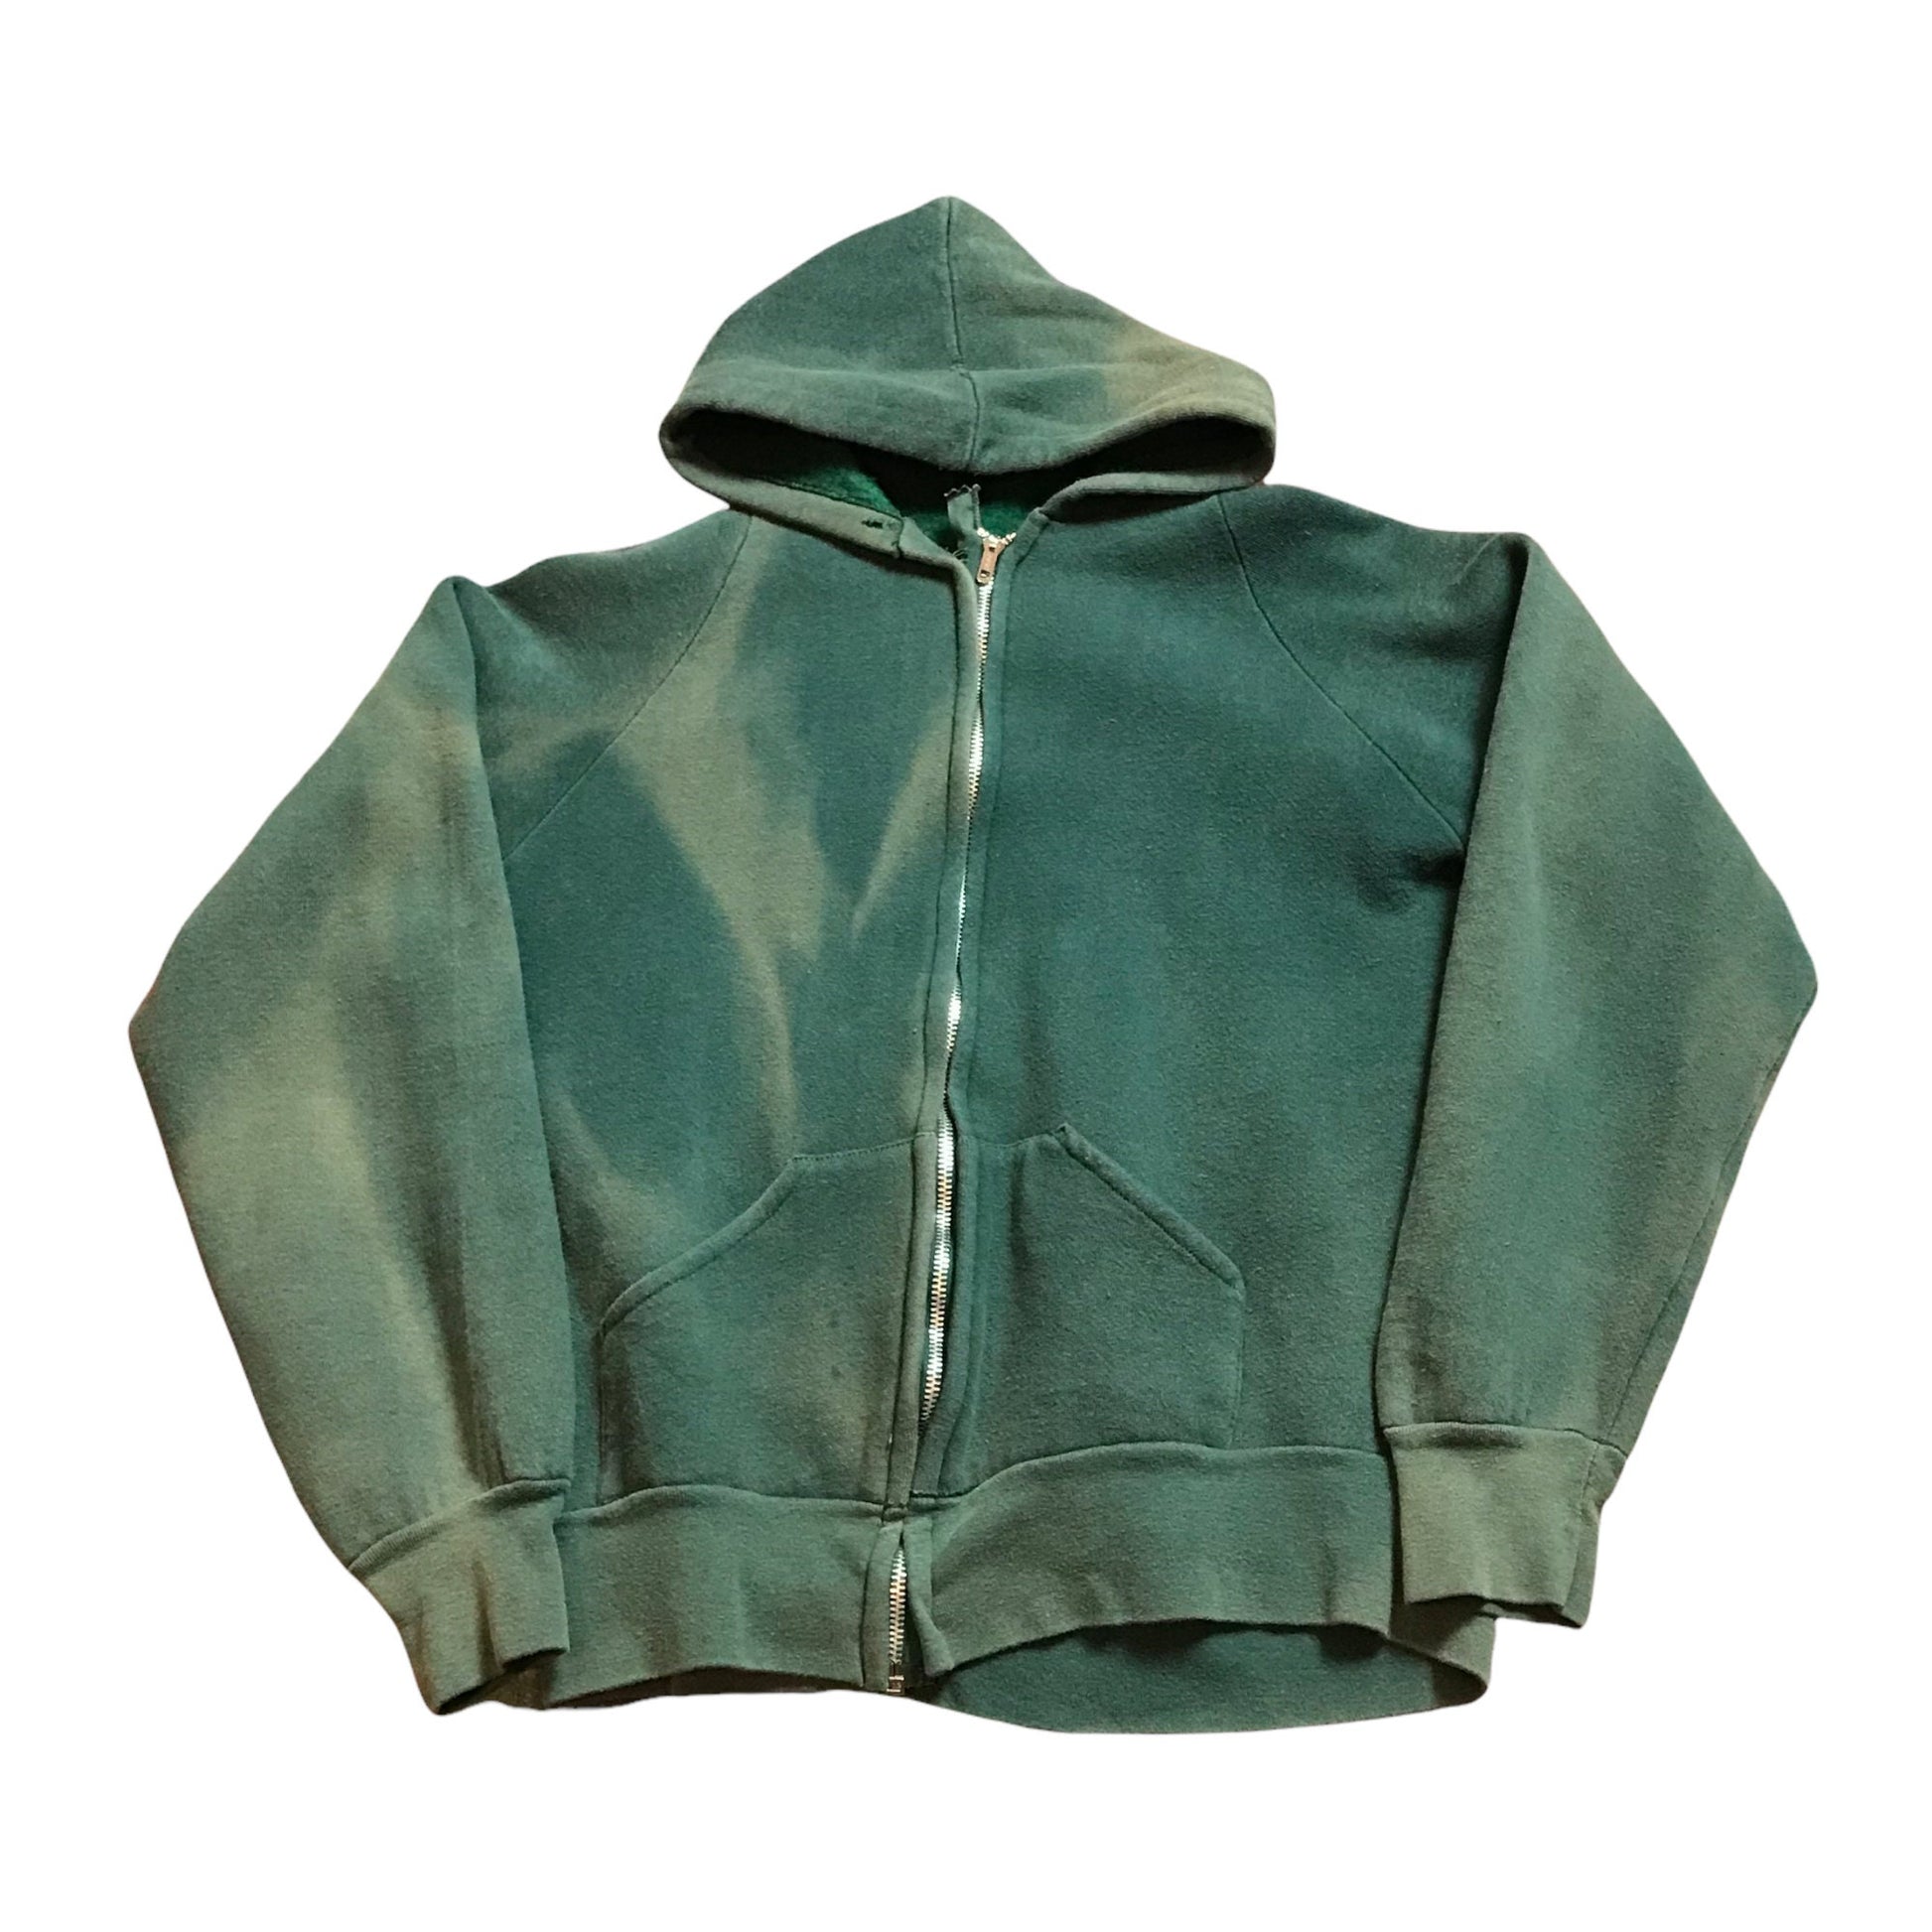 1980s Sunfaded Green Zip-Up Hoodie Sweatshirt Size XS/S